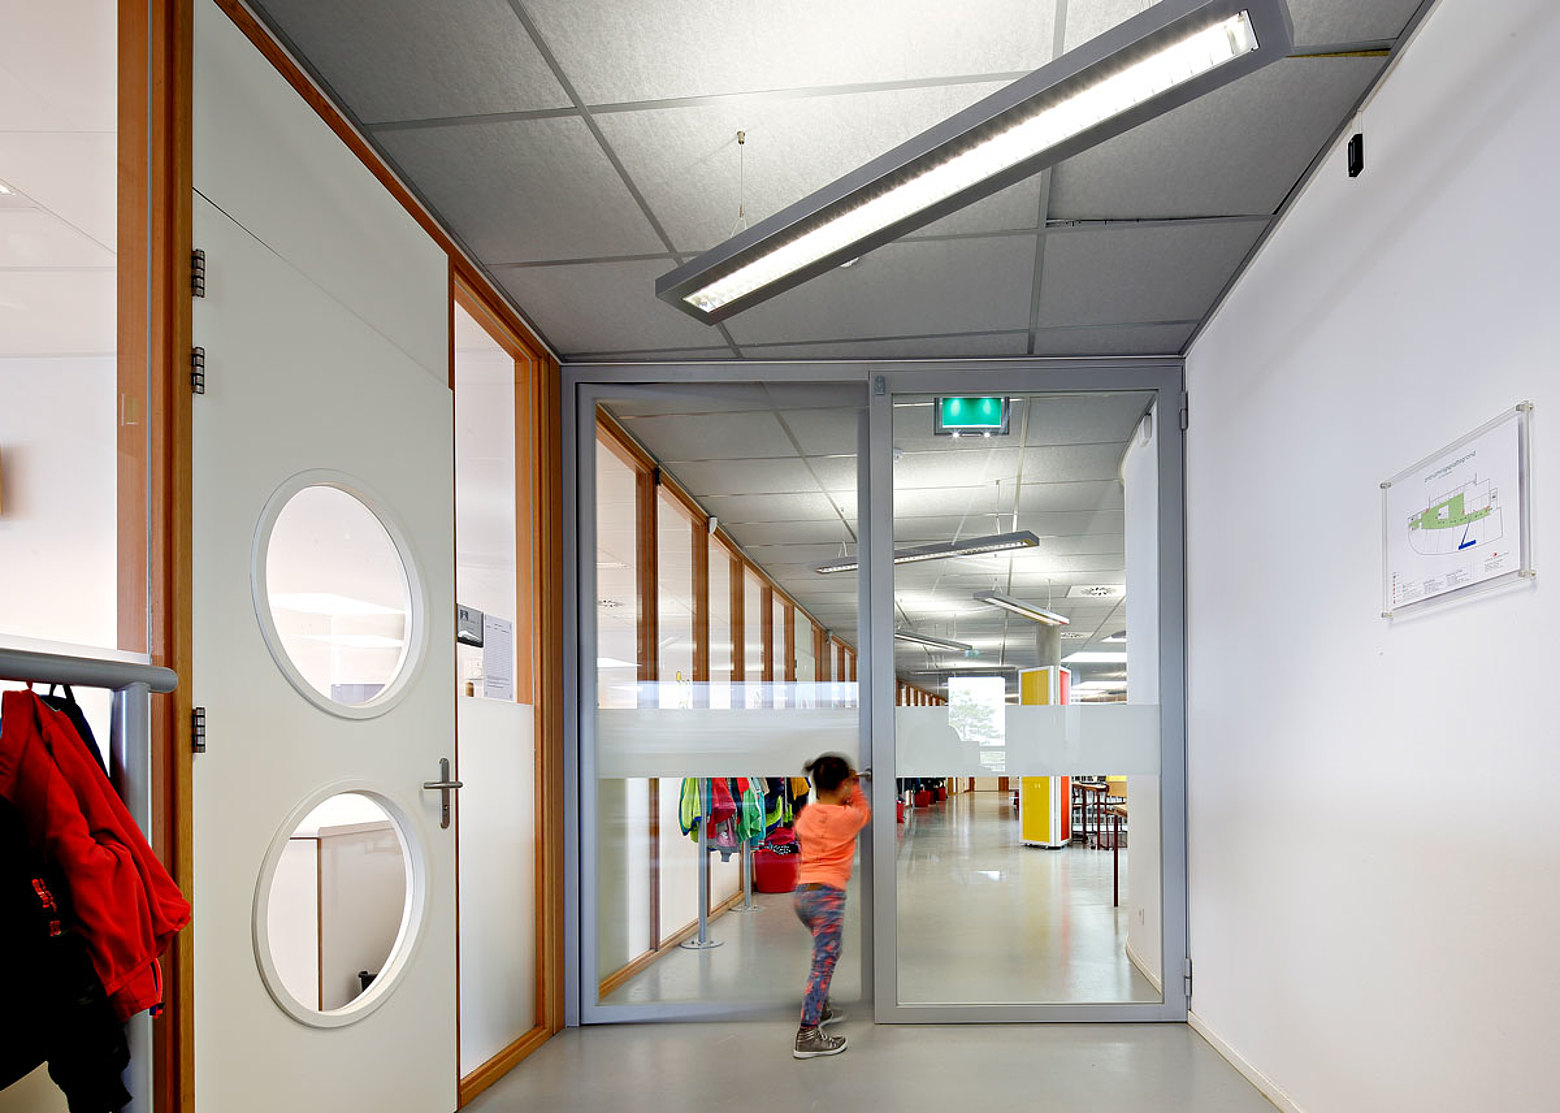 Verglaste Brandschutztüren aus Stahl EW60. Das verwendete Profilsystem ist forster presto.
Schule De Dukdalf, Niederlande